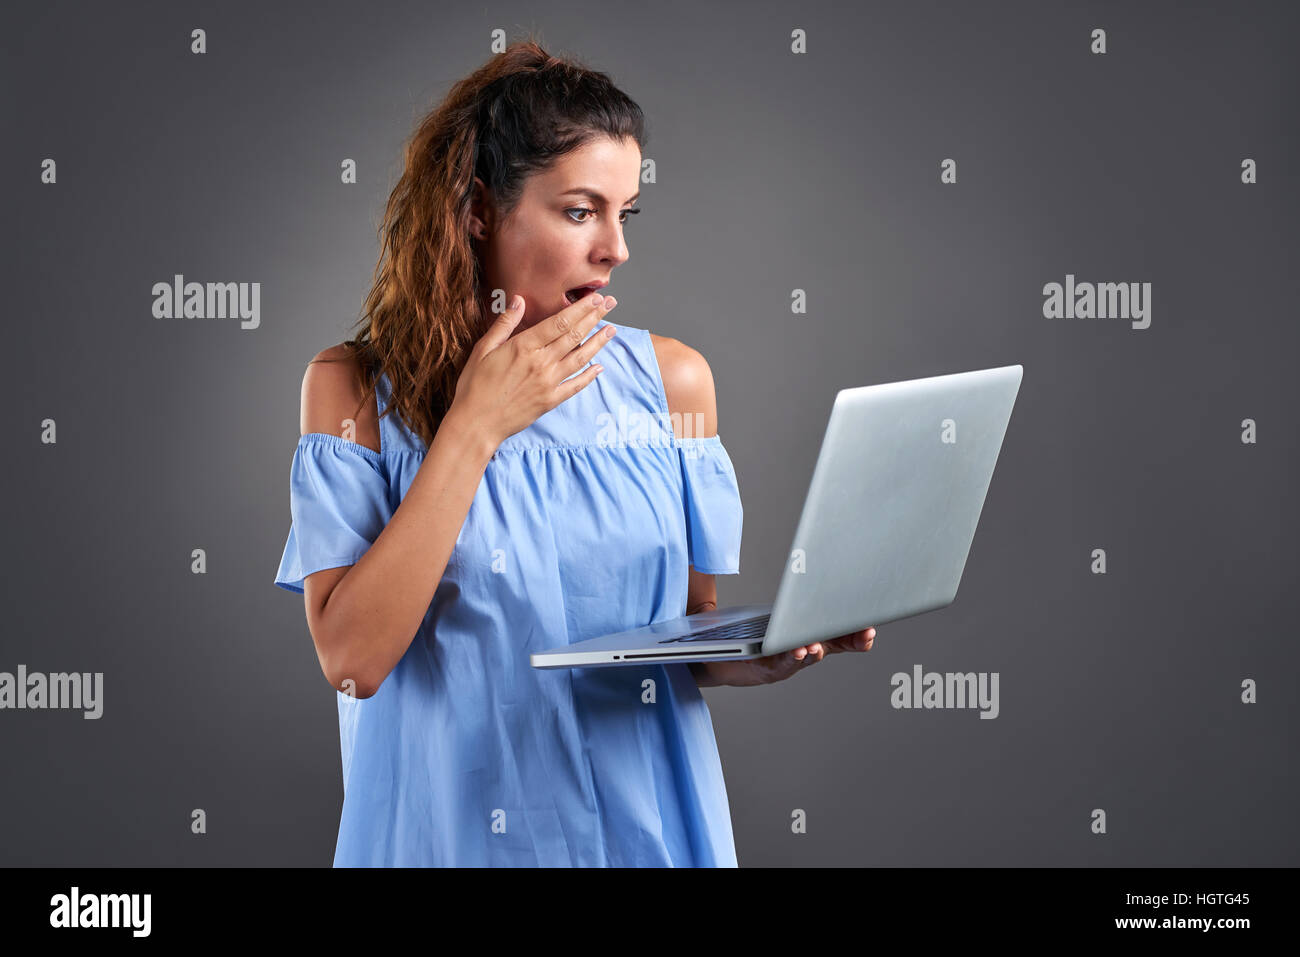 Eine schöne junge Frau stehend und Abholzung überrascht beim Betrachten eines Laptops in der Hand. Stockfoto